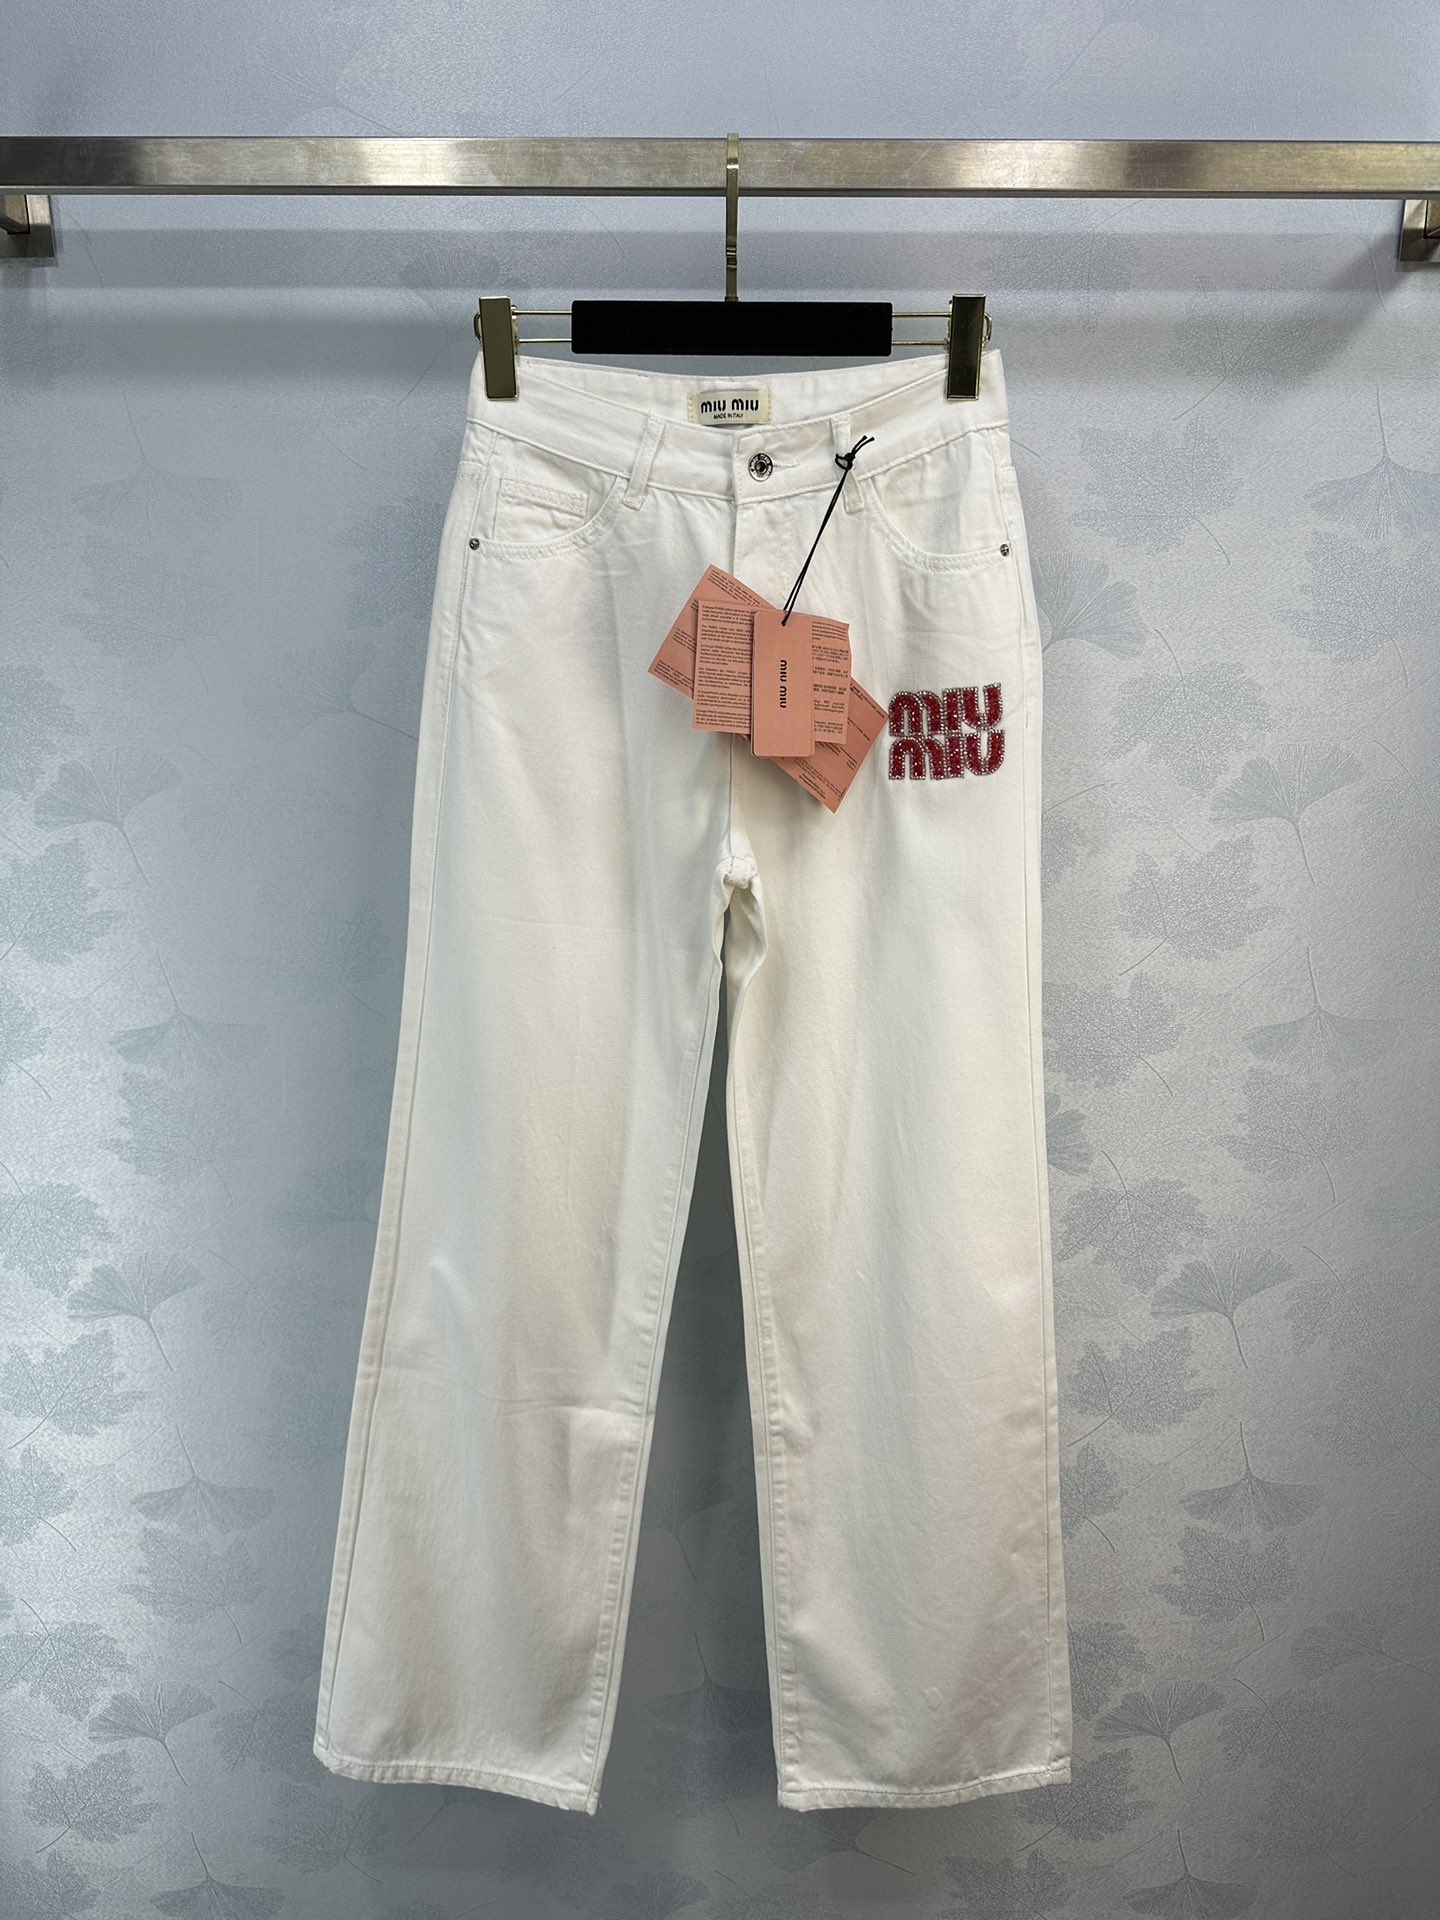 可换尺码！ miumi*夏季新款白色牛仔阔腿裤  超级清爽又百搭的版型超级适合夏季穿着1色3码SML。zywlj